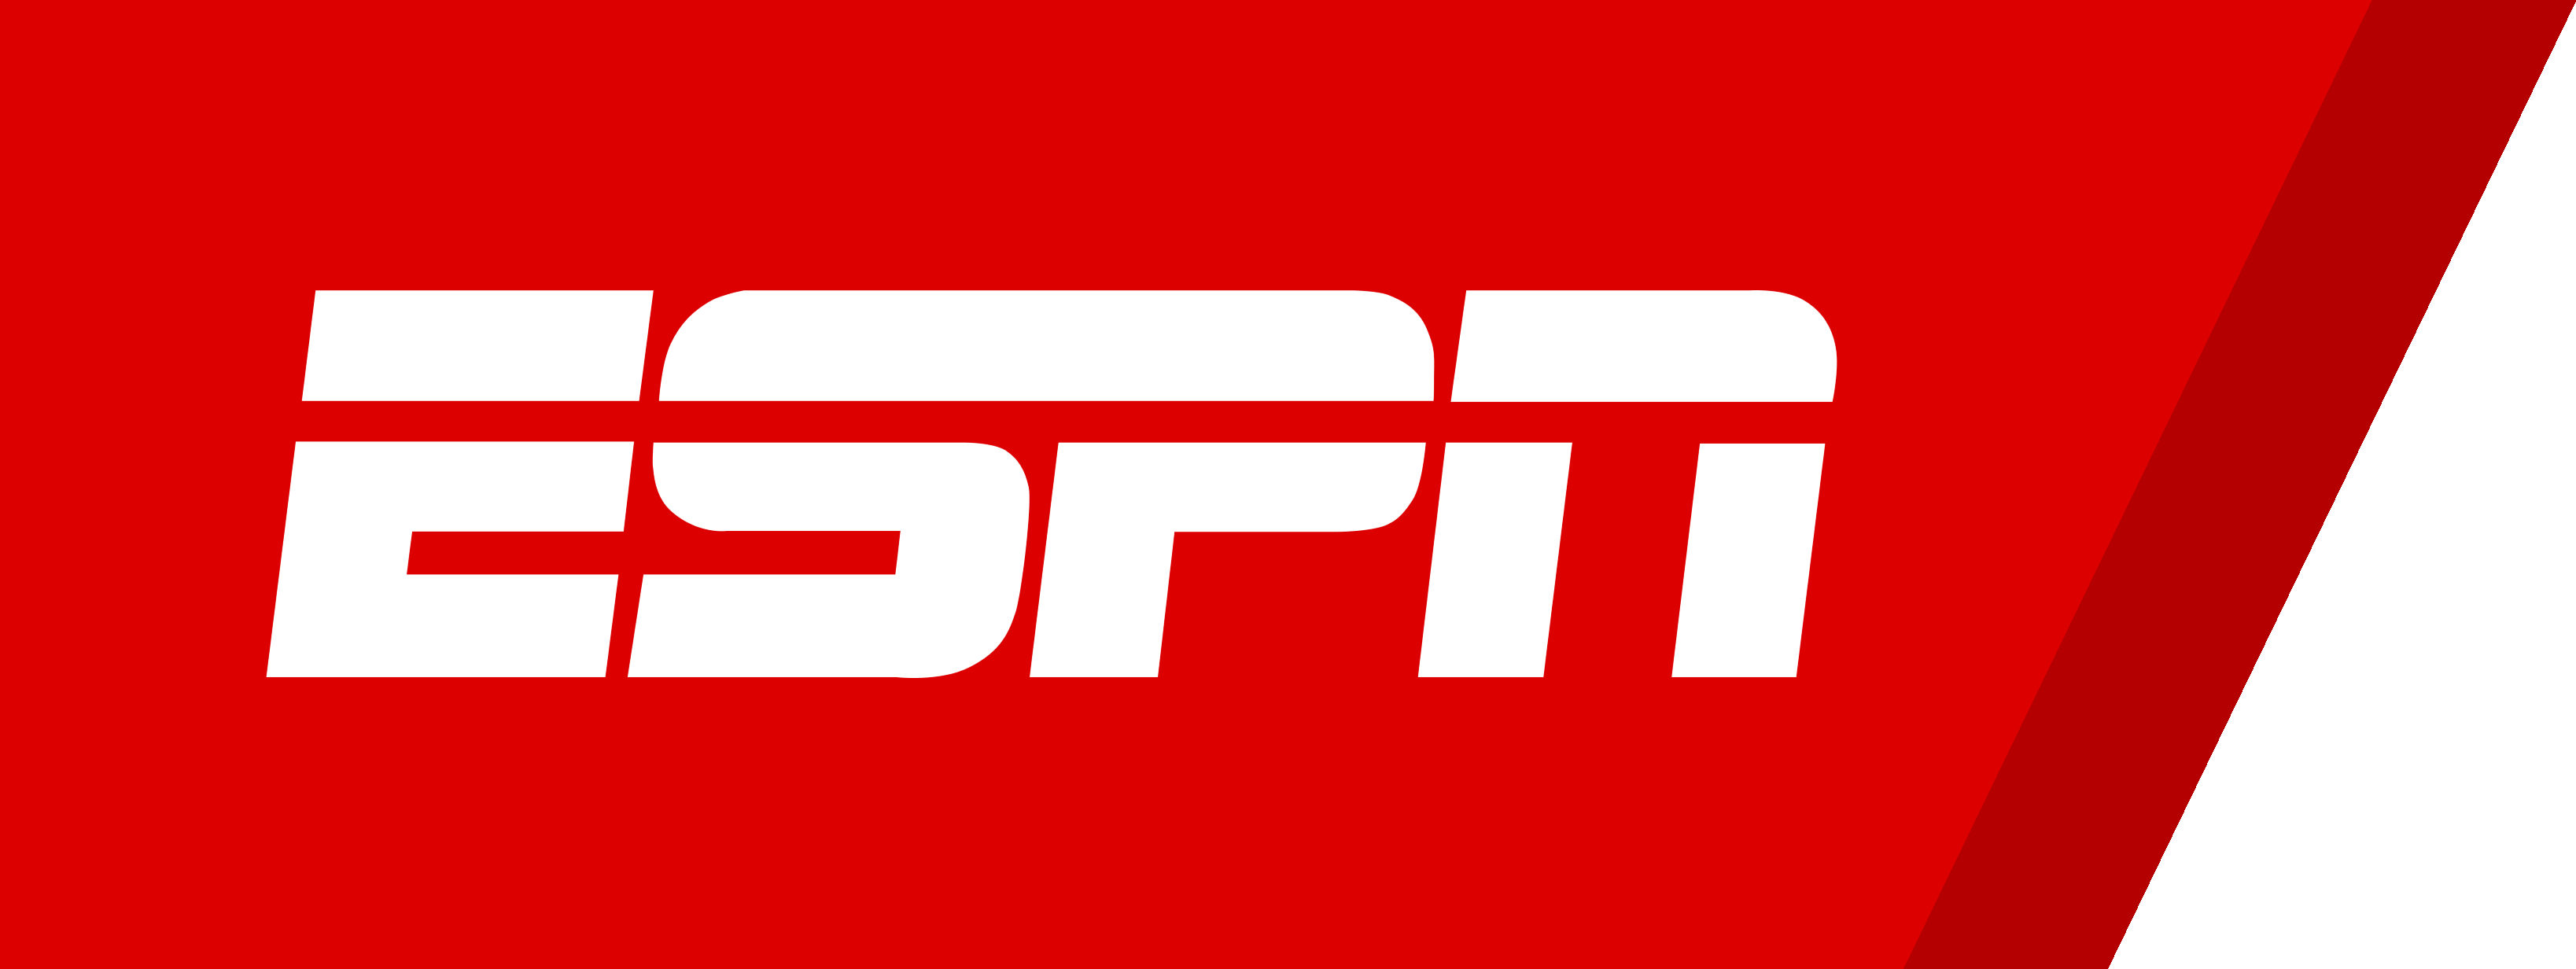 ESPN Logo PNG Image